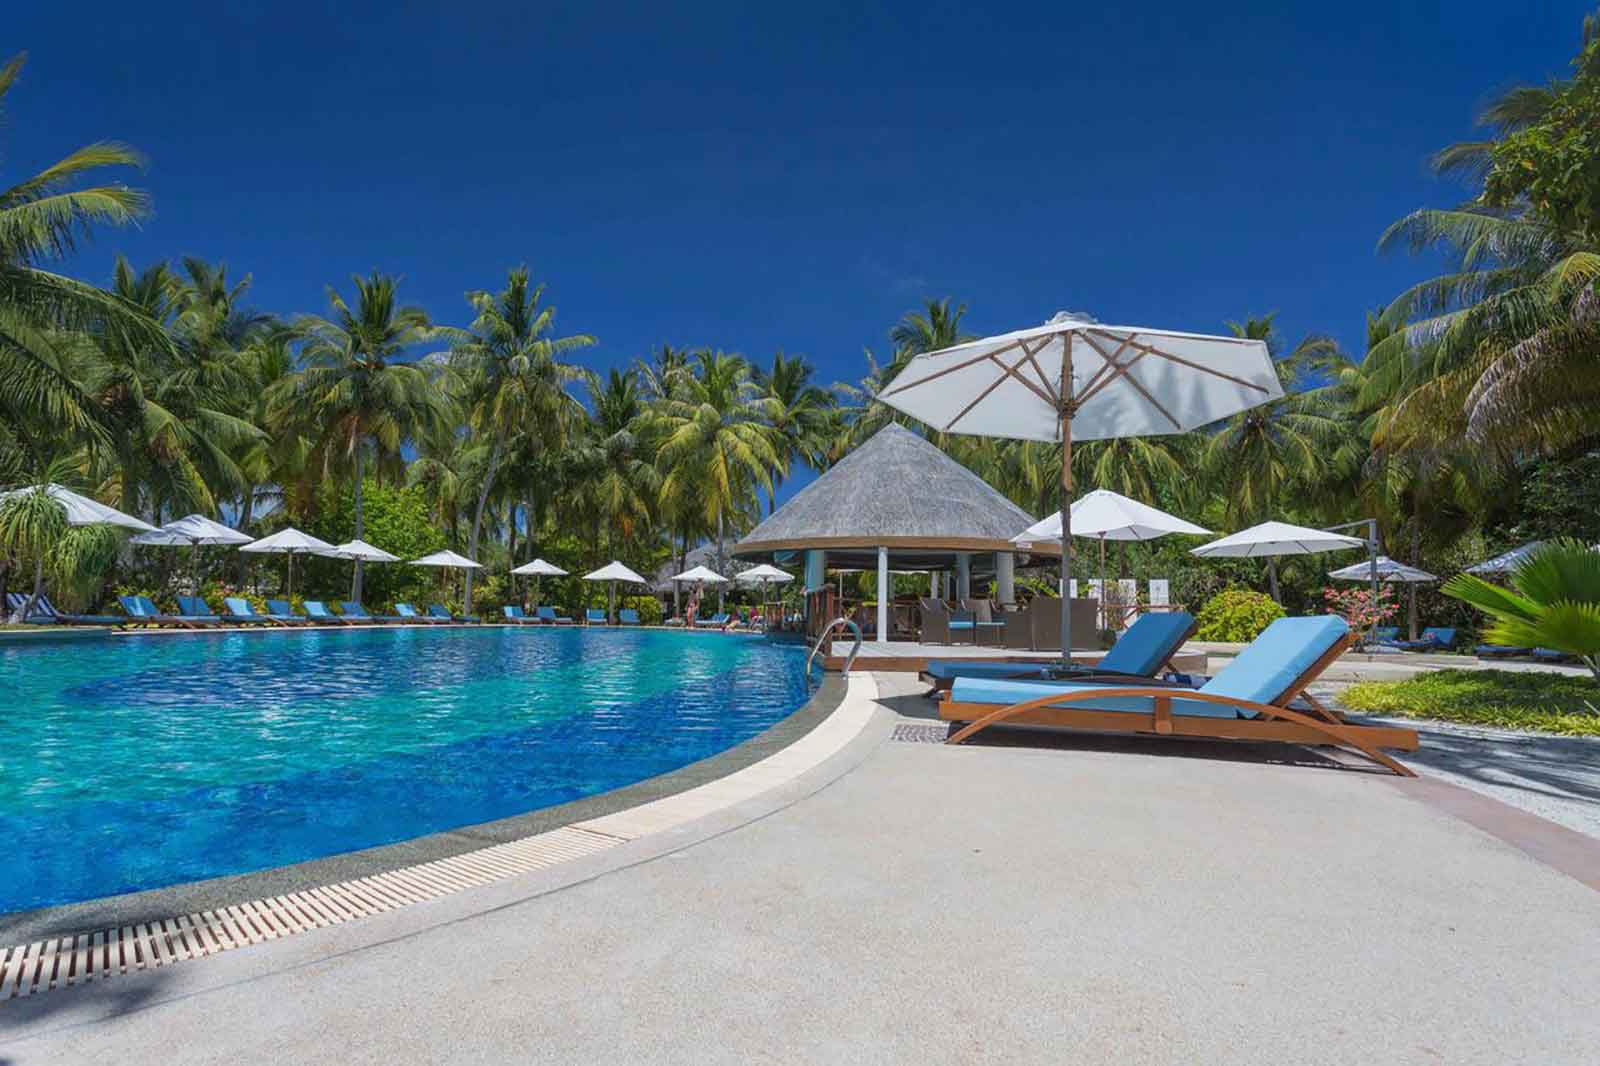 Bandos island resort. Мальдивы Bandos Maldives. Отель Bandos Island Resort & Spa 4*. Отель Bandos Maldives 4. Мальдивы Бандос Bandos Island Resort.